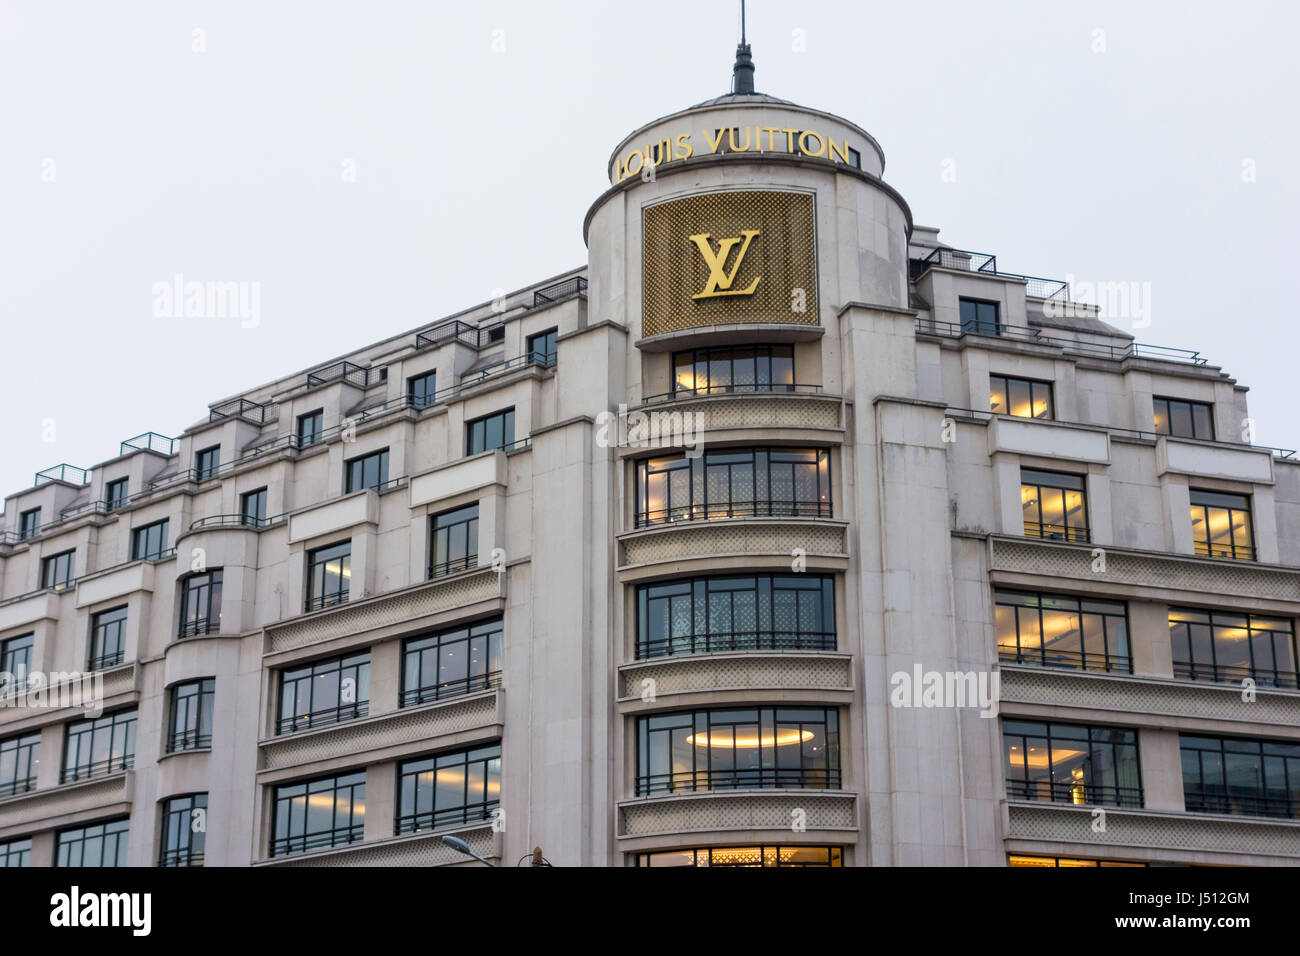 Louis Vuitton magasin phare, 101 avenue des Champs-Elysées, Paris